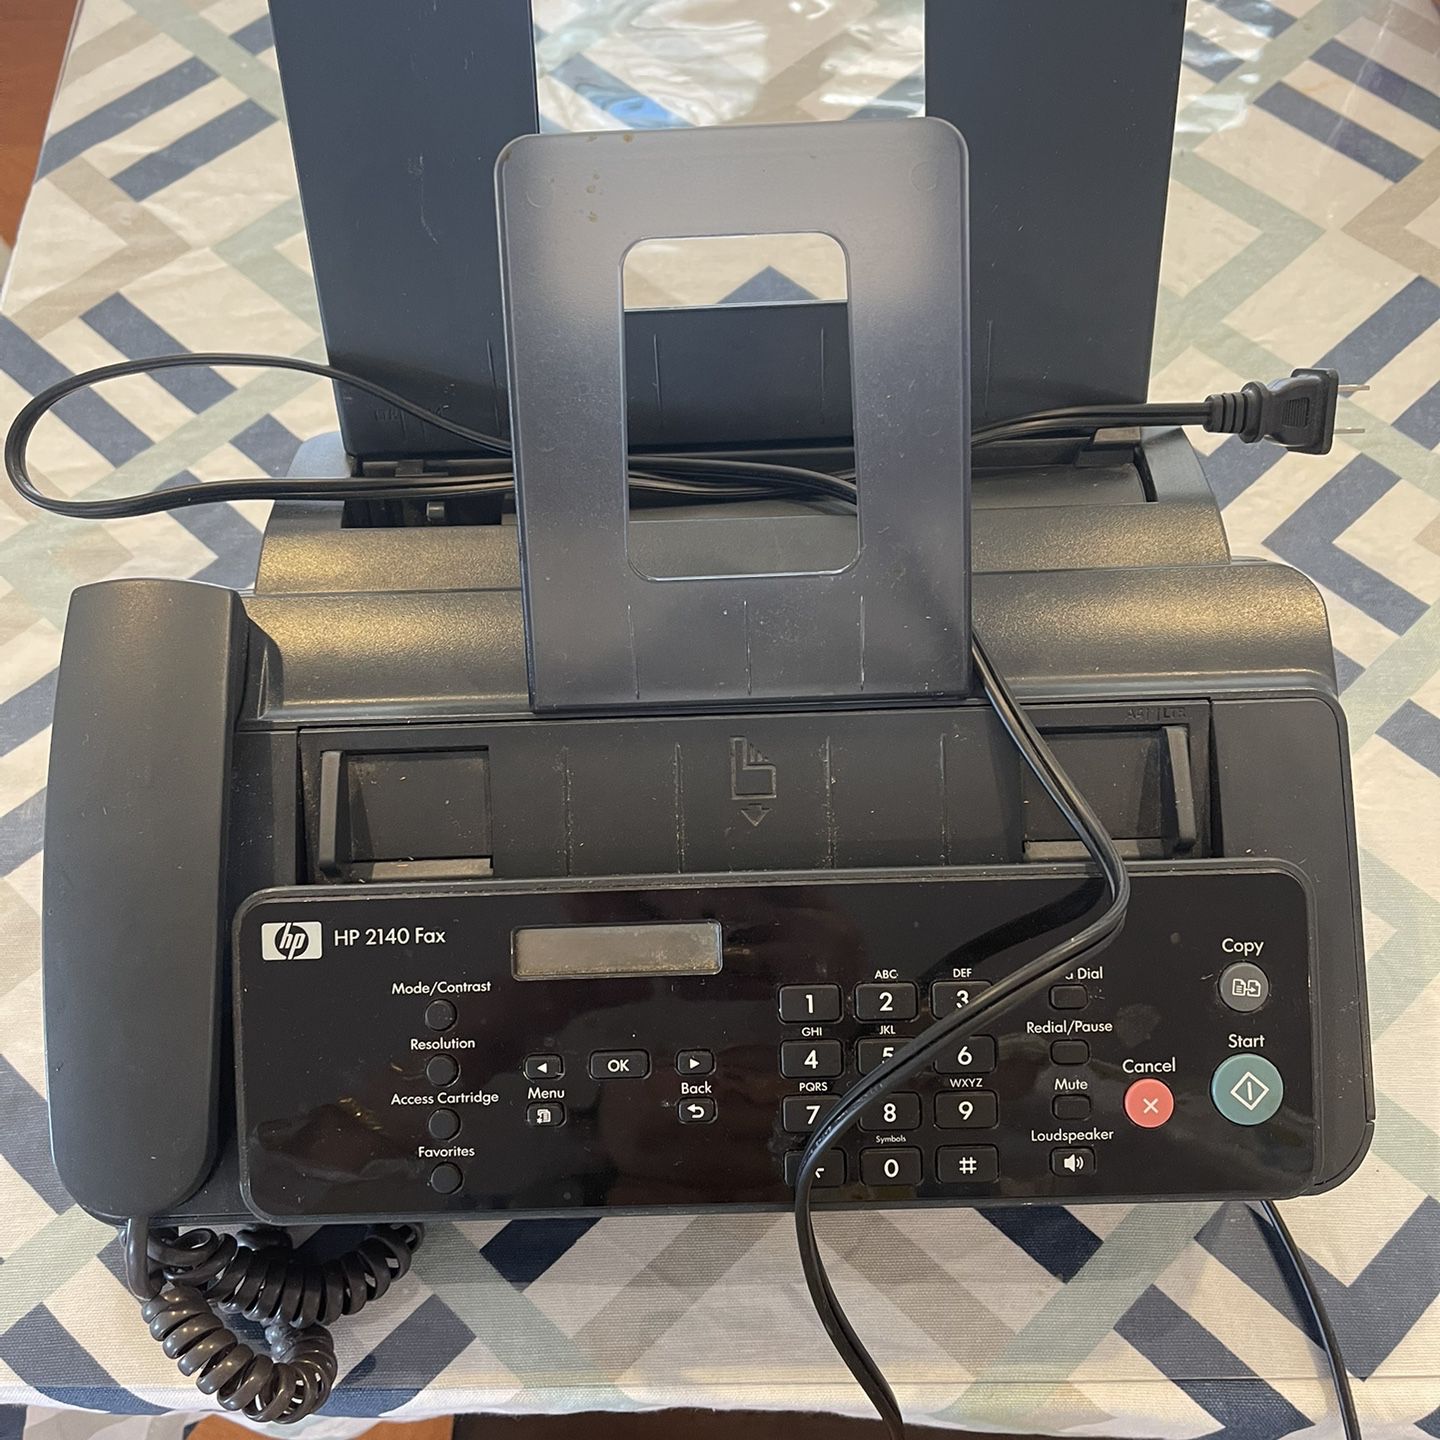 Fax machine   HP 2140 Fax